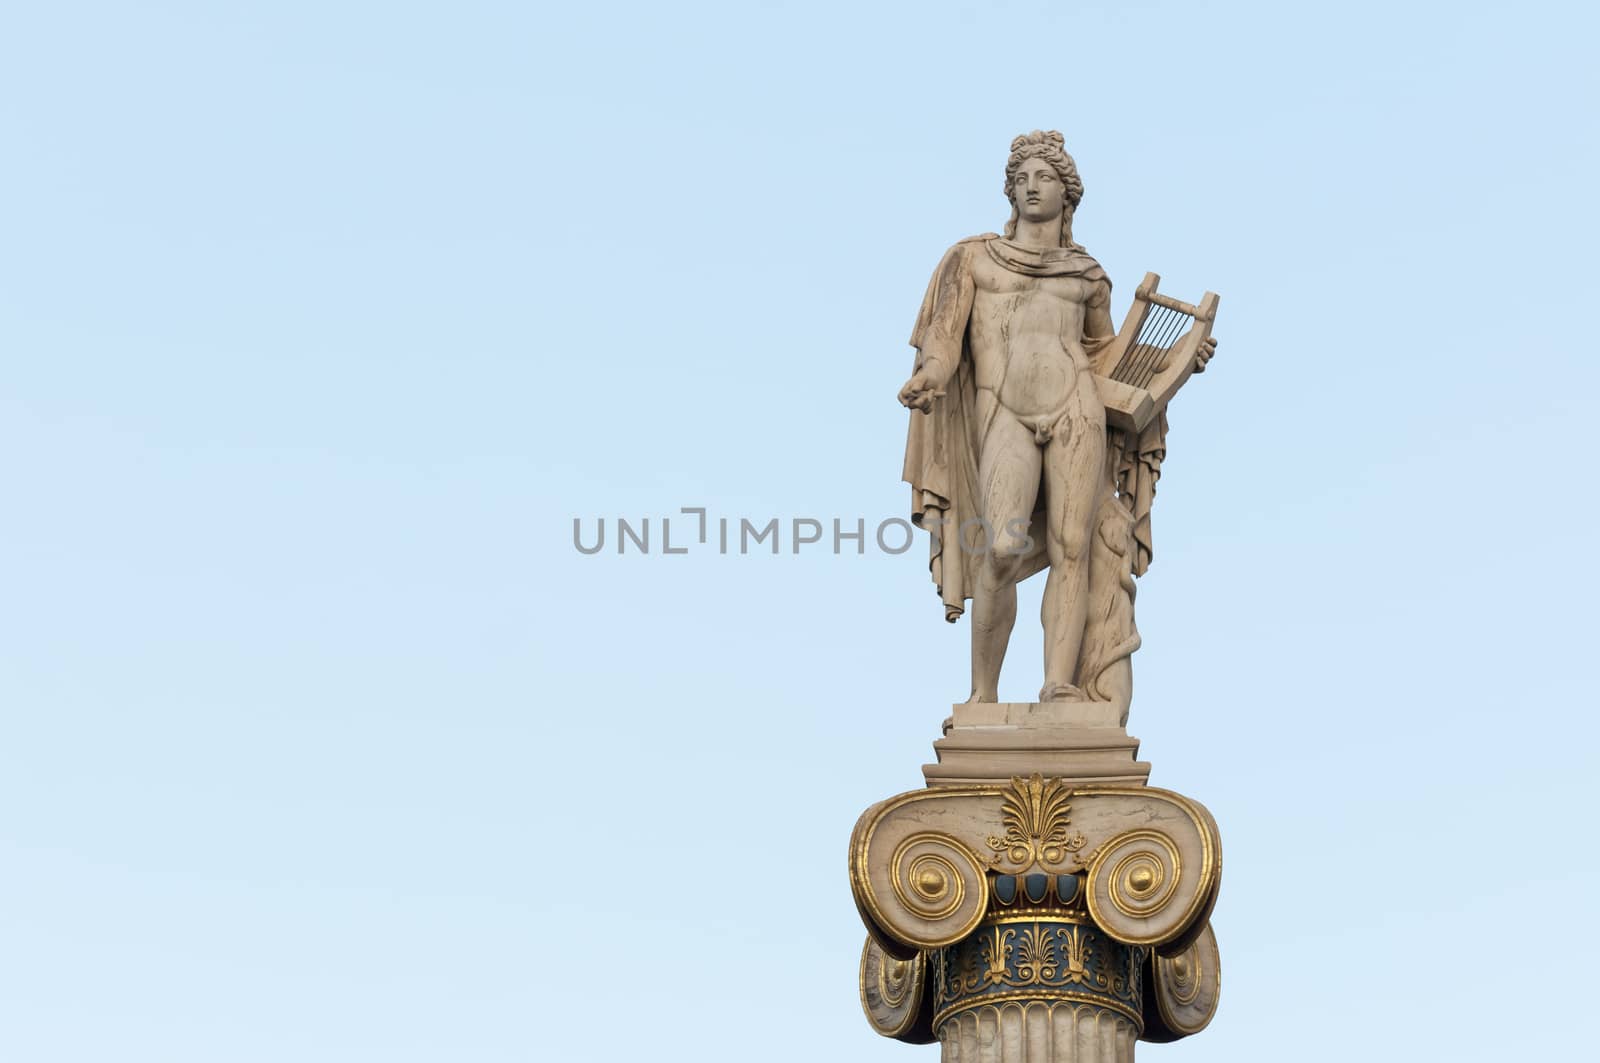 classical Apollo statue